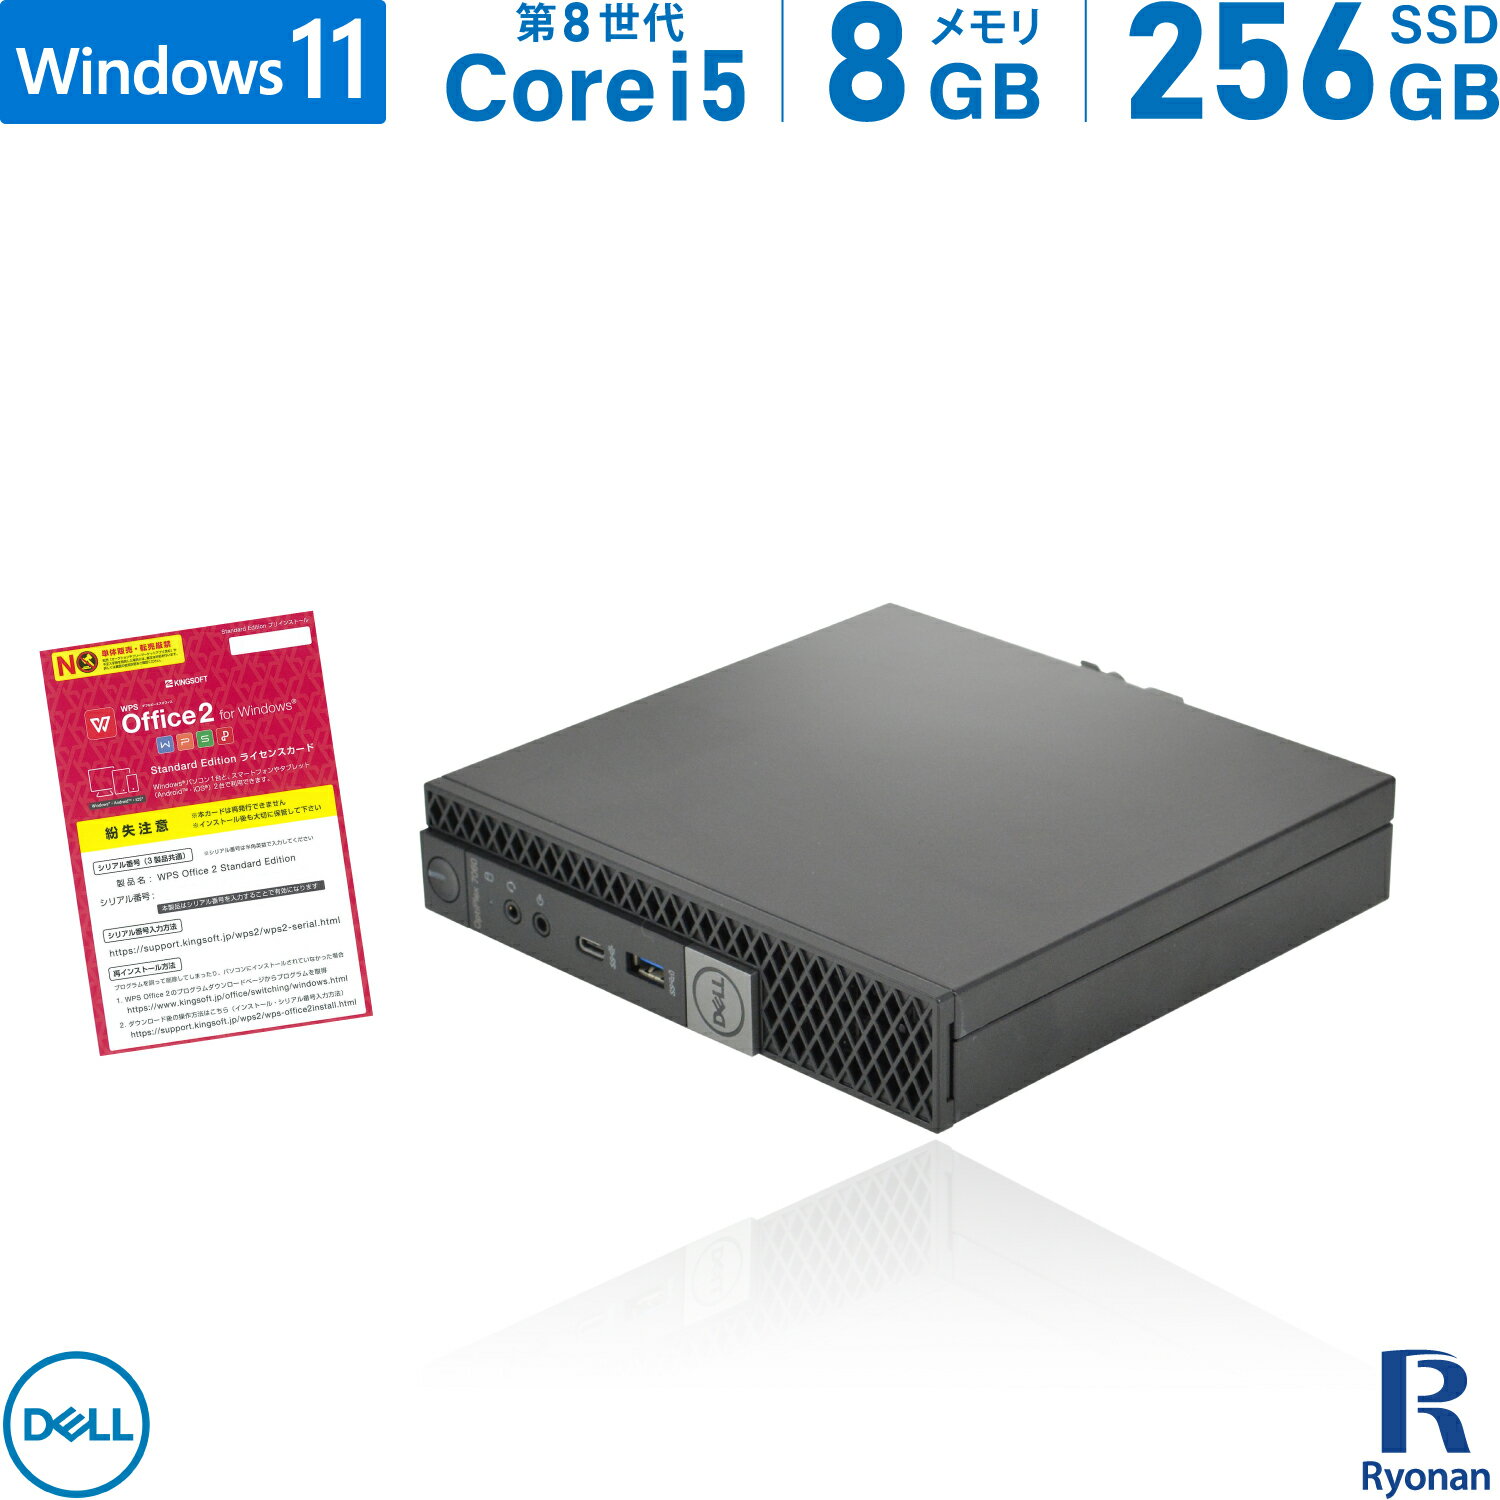 【スーパーSALE 10 OFF】DELL OptiPlex 7060 micro 第8世代 Core i5 メモリ:8GB 新品SSD:240GB デスクトップパソコン USB 3.0 Type-C Office付 パソコン デスクトップ 中古パソコン Windows 11 搭載 Windows 10 無線LAN付き ミニPC